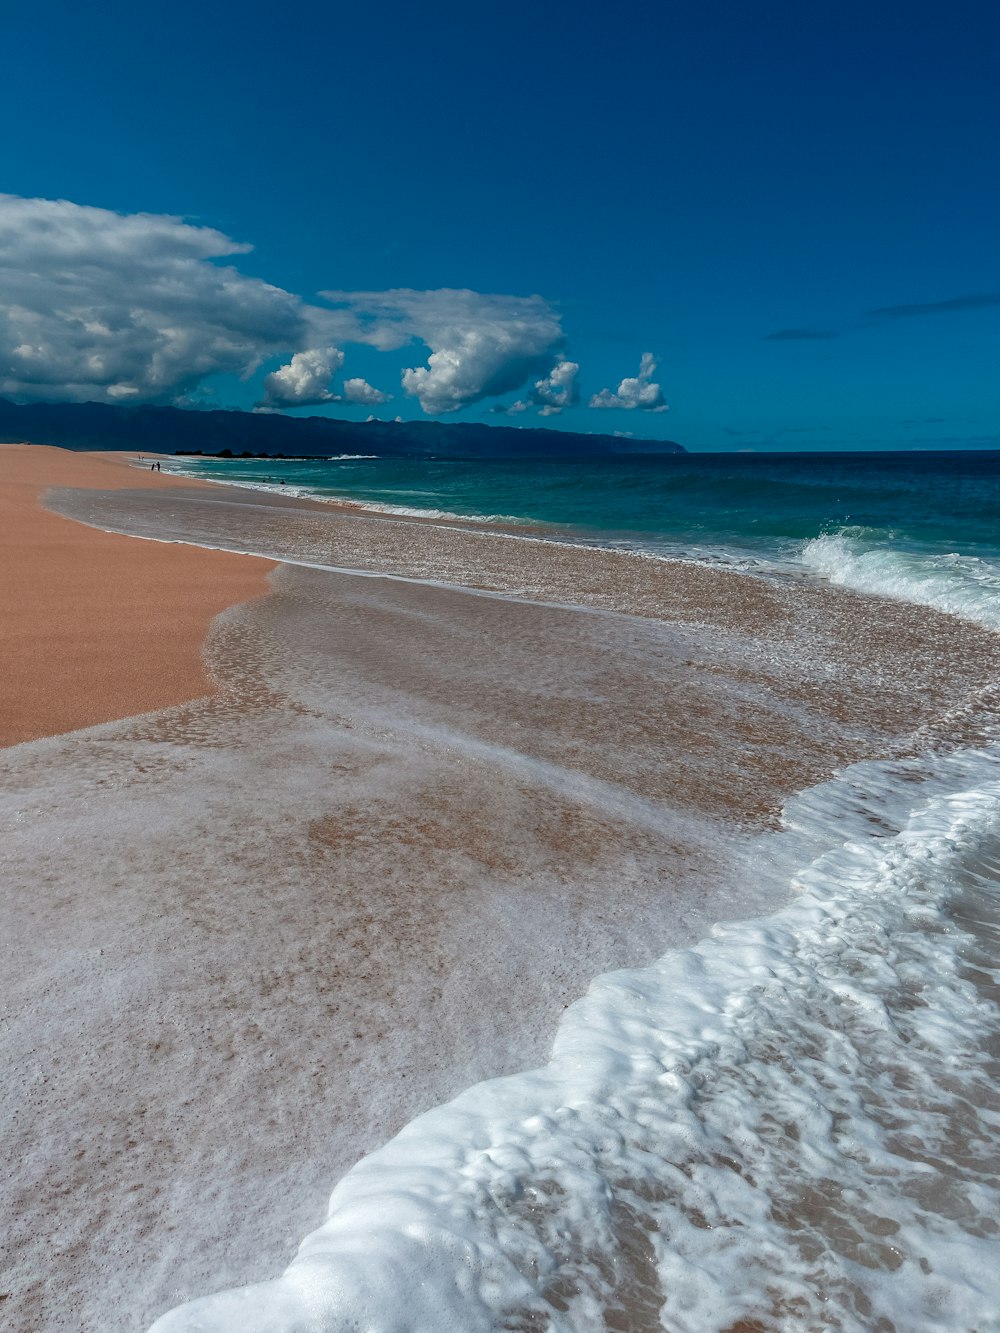 Una spiaggia sabbiosa con onde che entrano ed escono dall'acqua